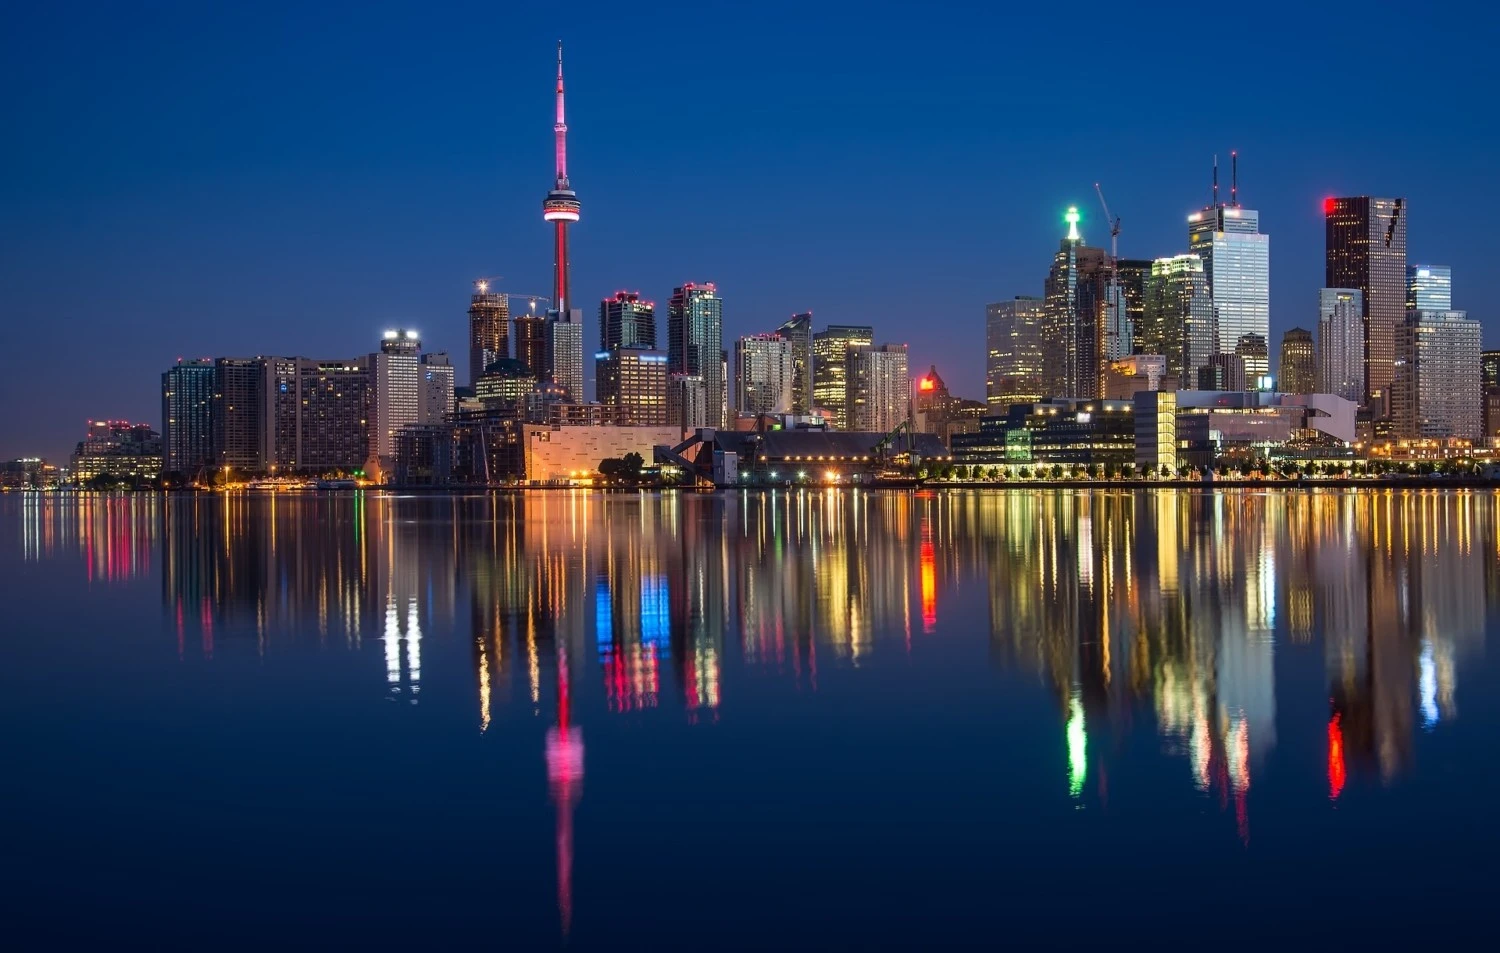 Mudarse a Toronto - Skyline de Toronto al anochecer